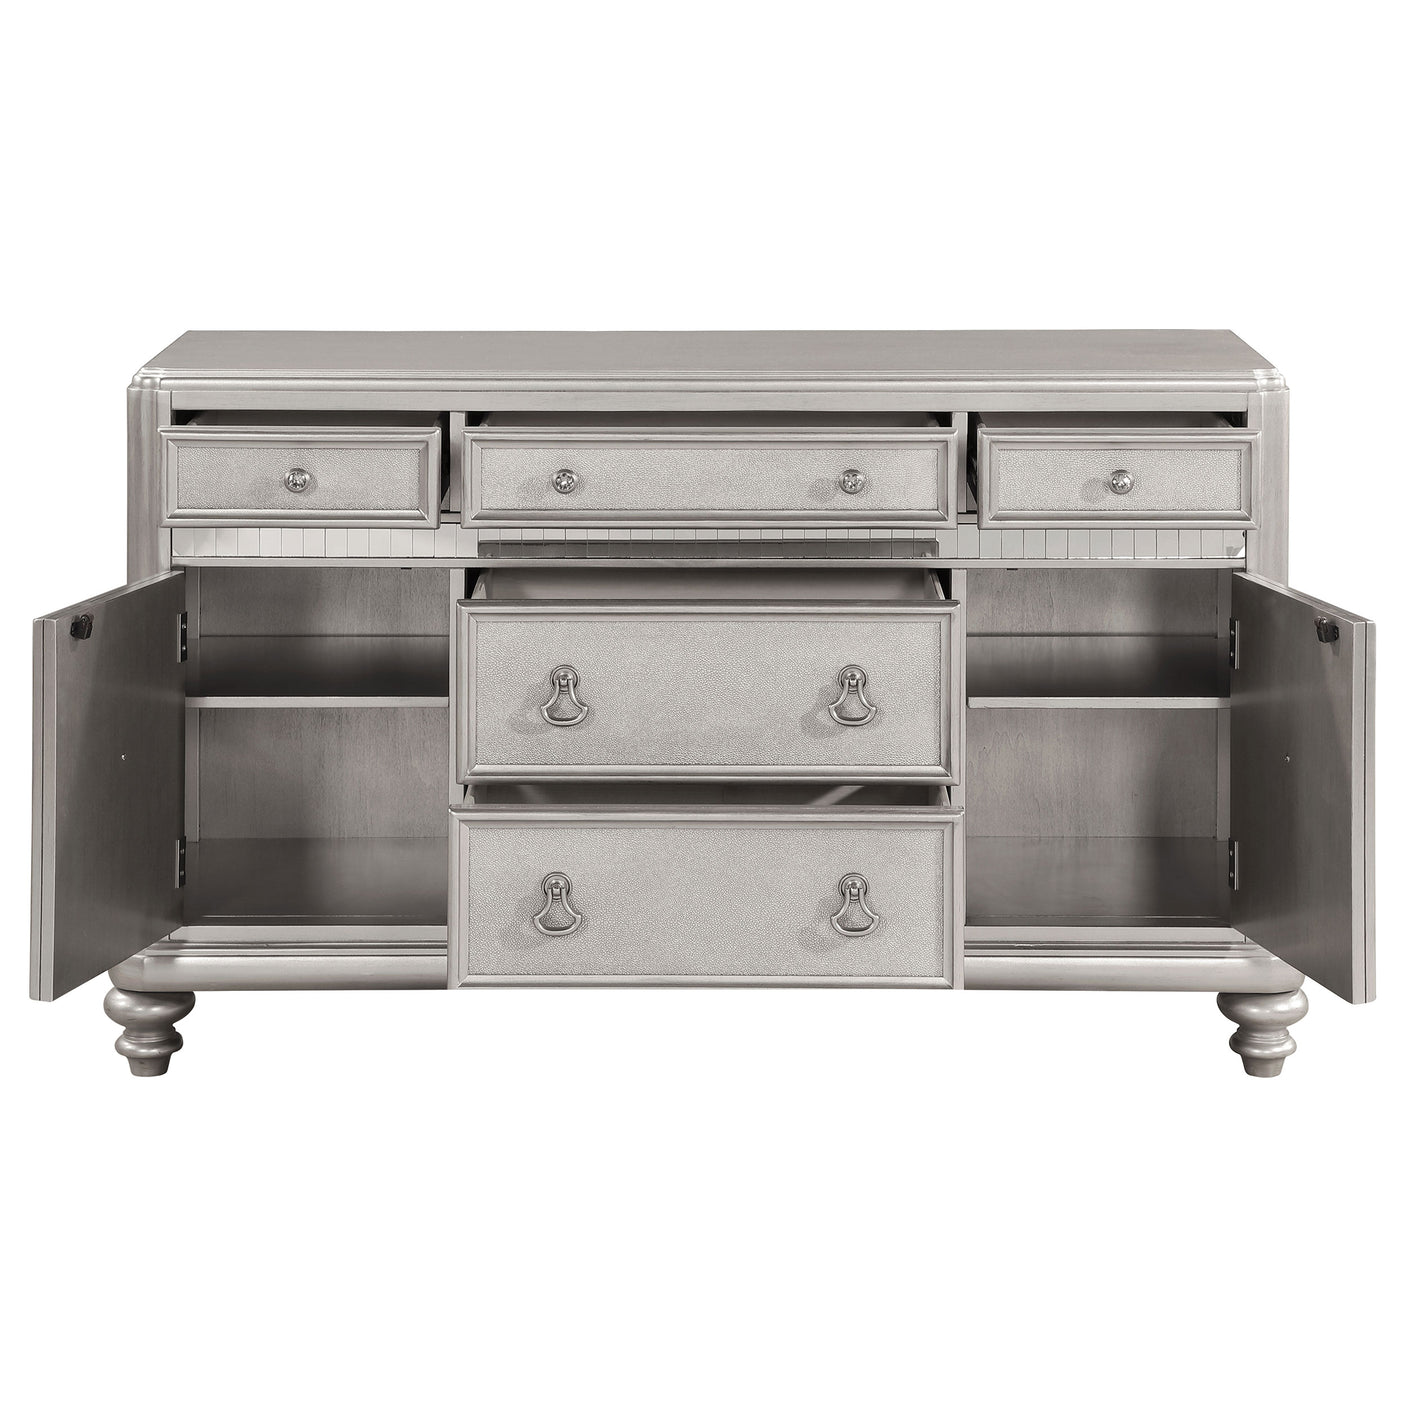 Sideboard - Bling Game 5-drawer Dining Server Metallic Platinum